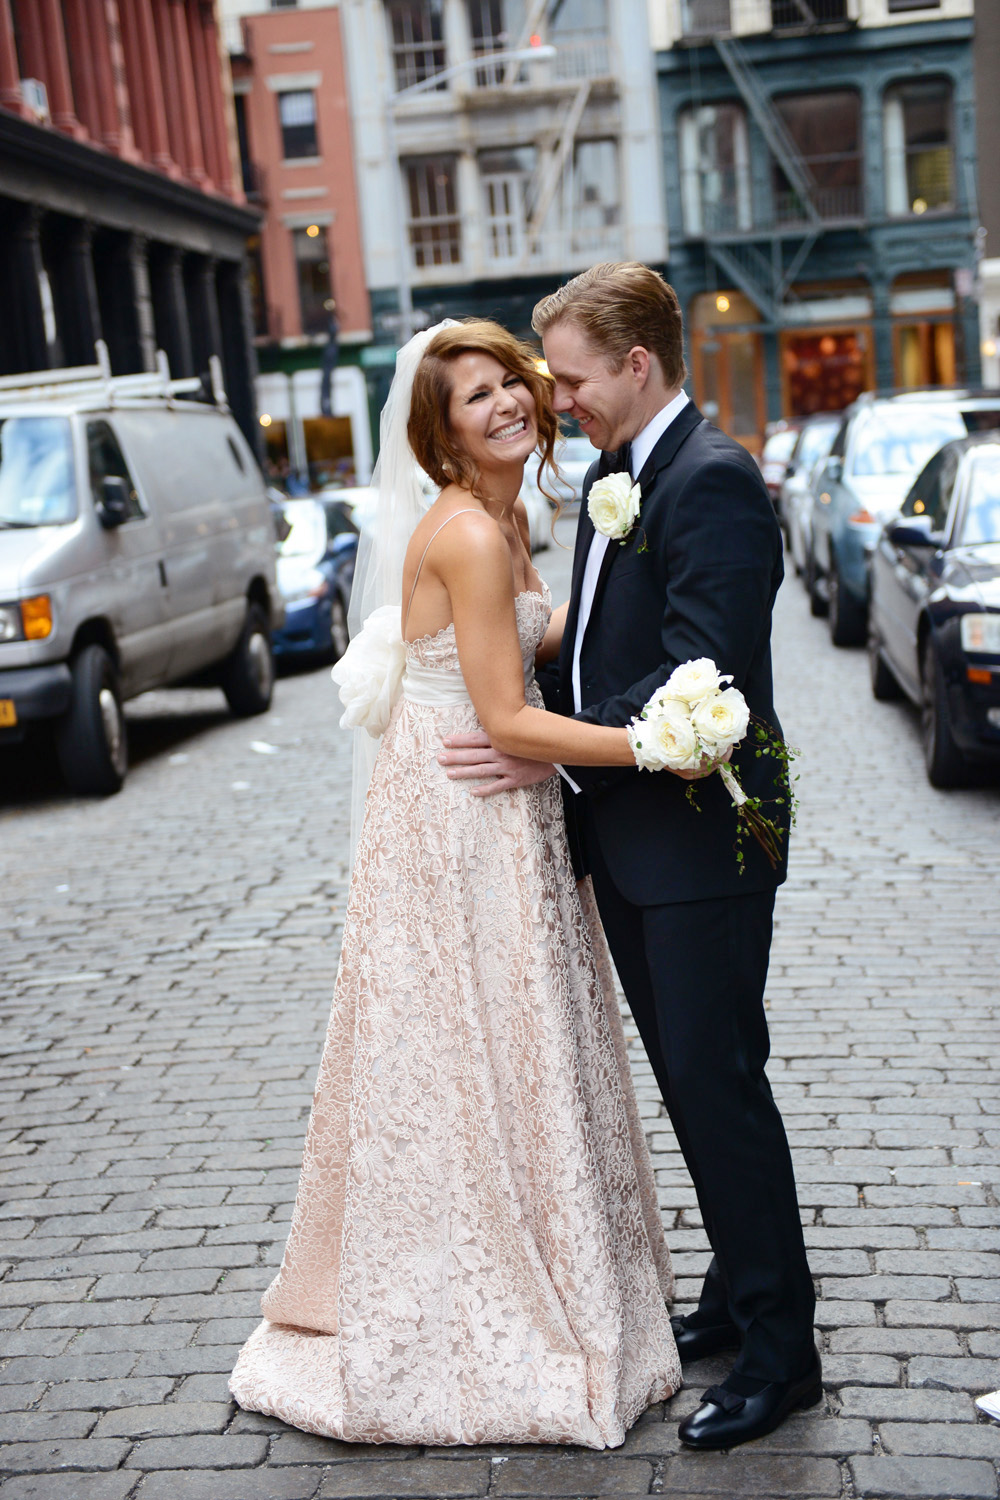 Josie und Brent heiraten in New York auf der Dachterasse im NoMo SoHo Hotel. Fotografiert von Hochzeitsfotograf New York XOANDREA